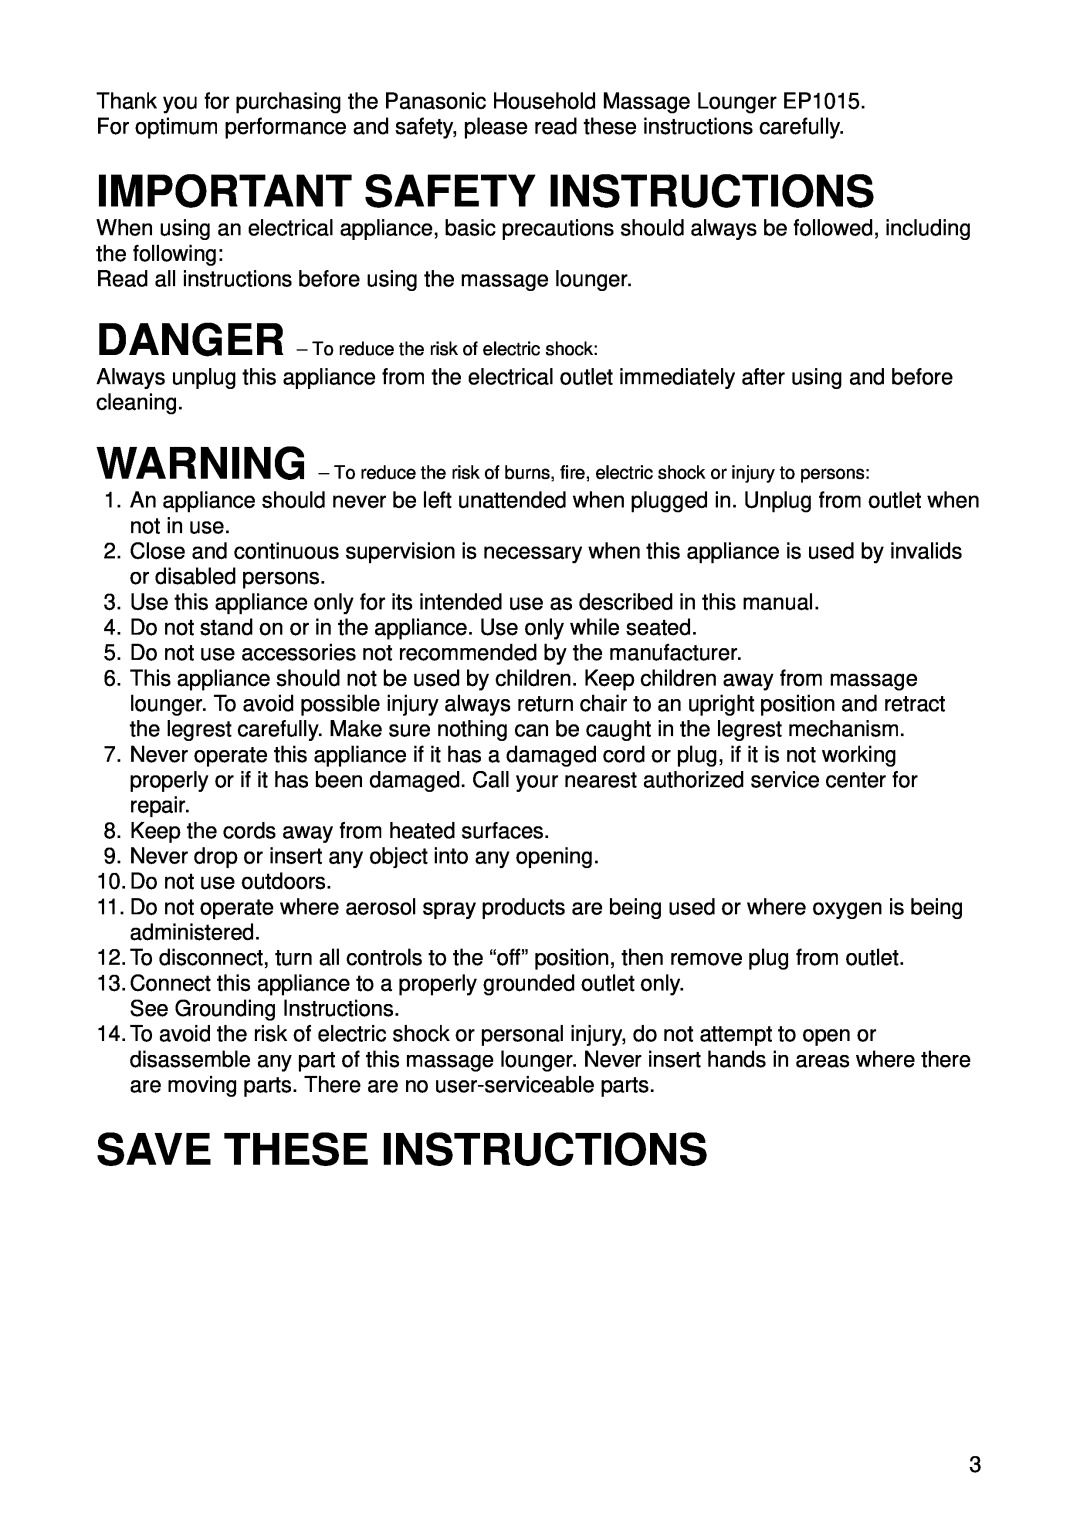 Panasonic EP1015 manuel dutilisation Important Safety Instructions, Save These Instructions 